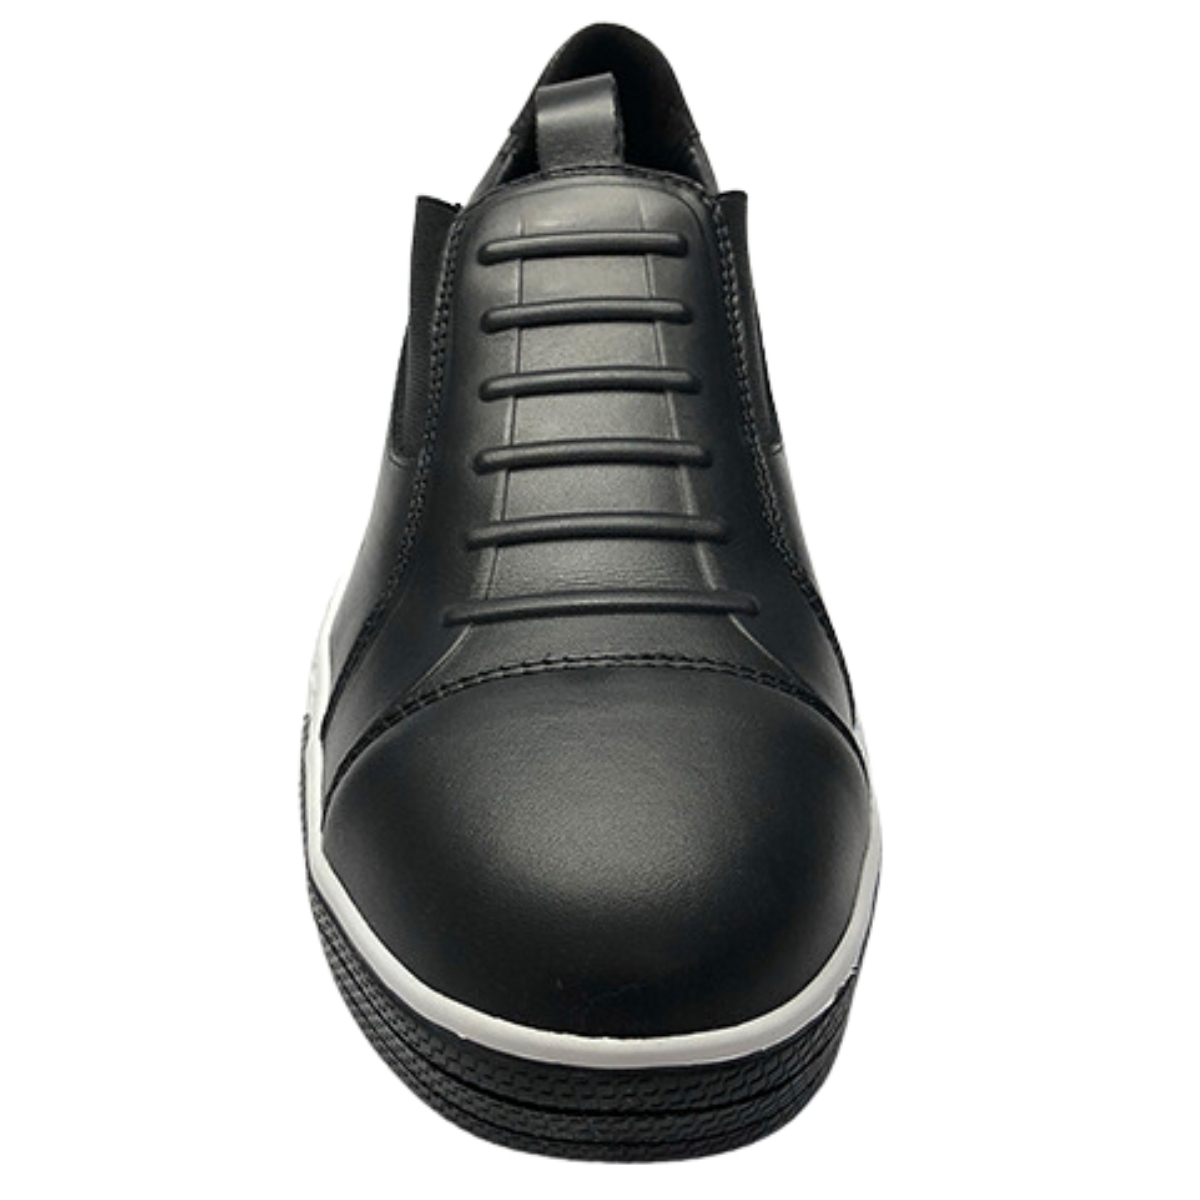 Zapatos de chef GT1pro Magister Michelin tipo zapatilla